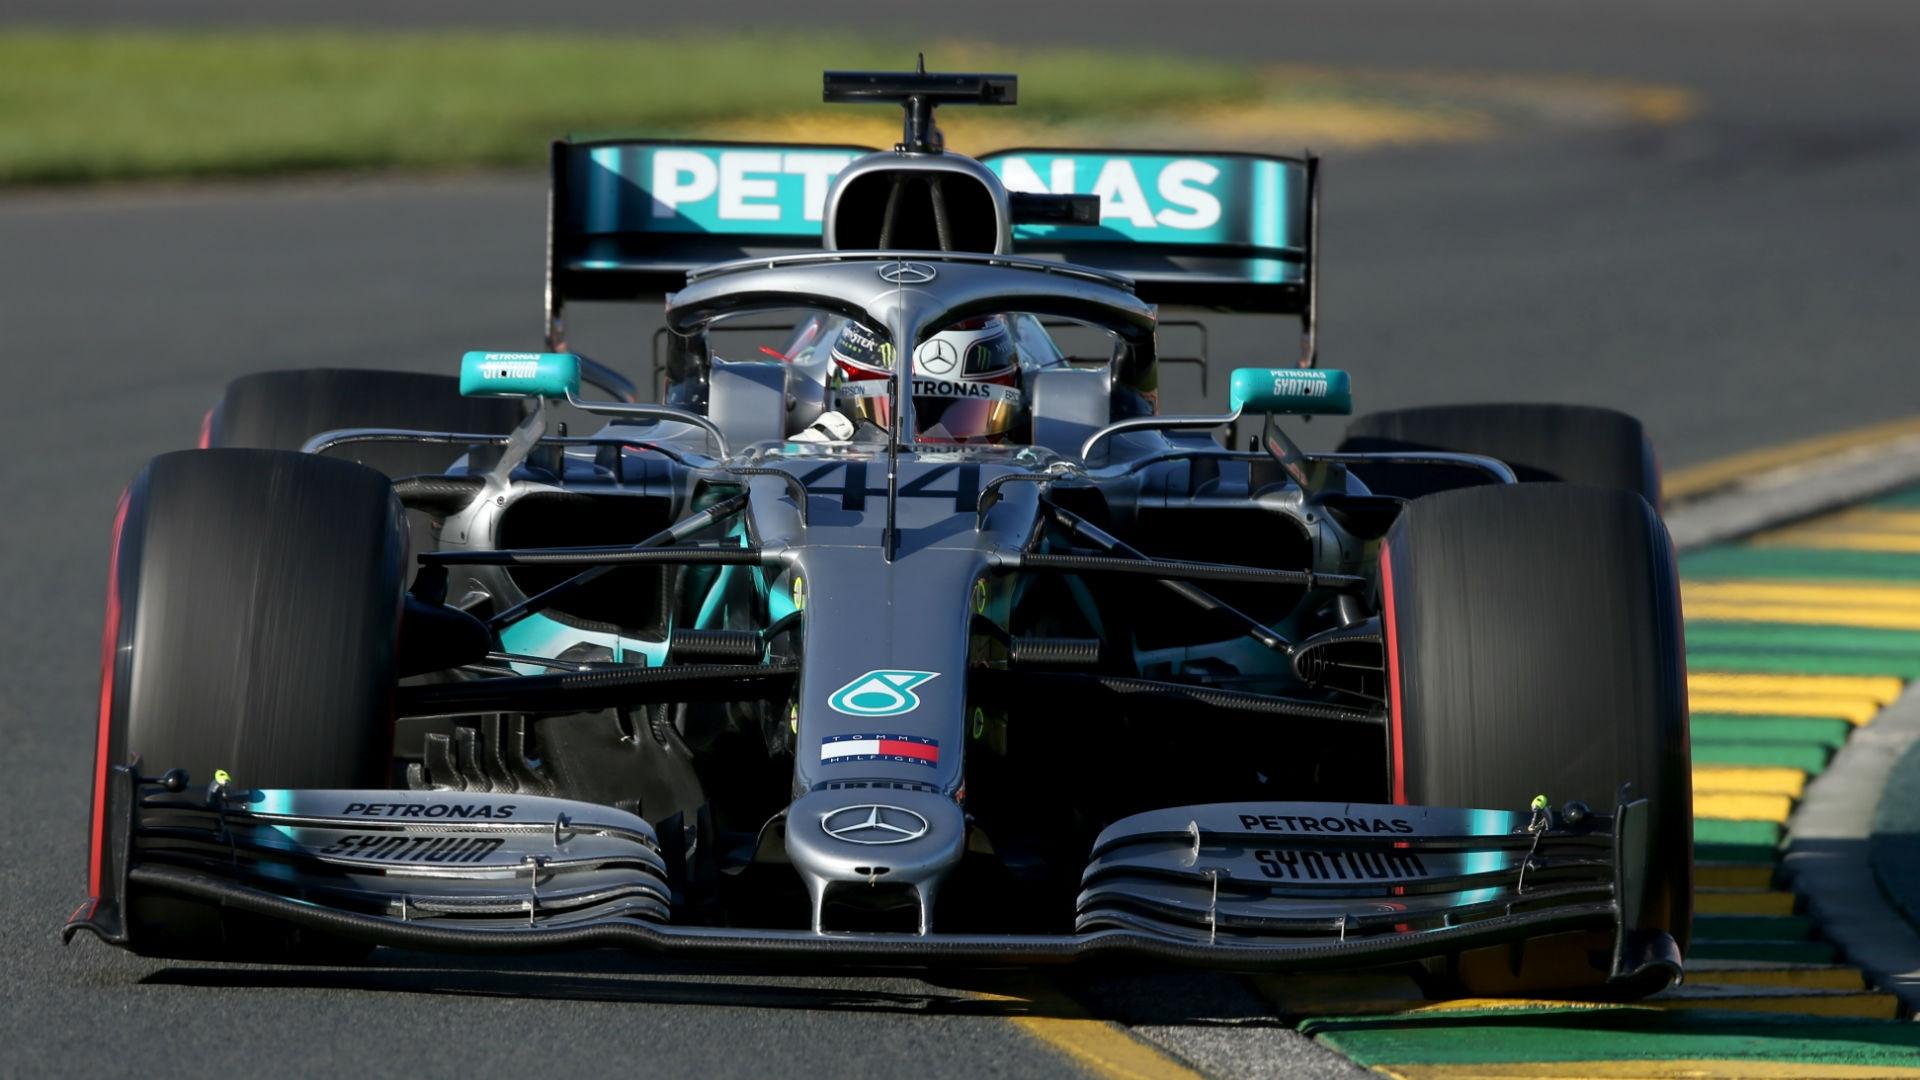 F1 Australian Grand Prix: Lewis Hamilton takes pole as Ferrari